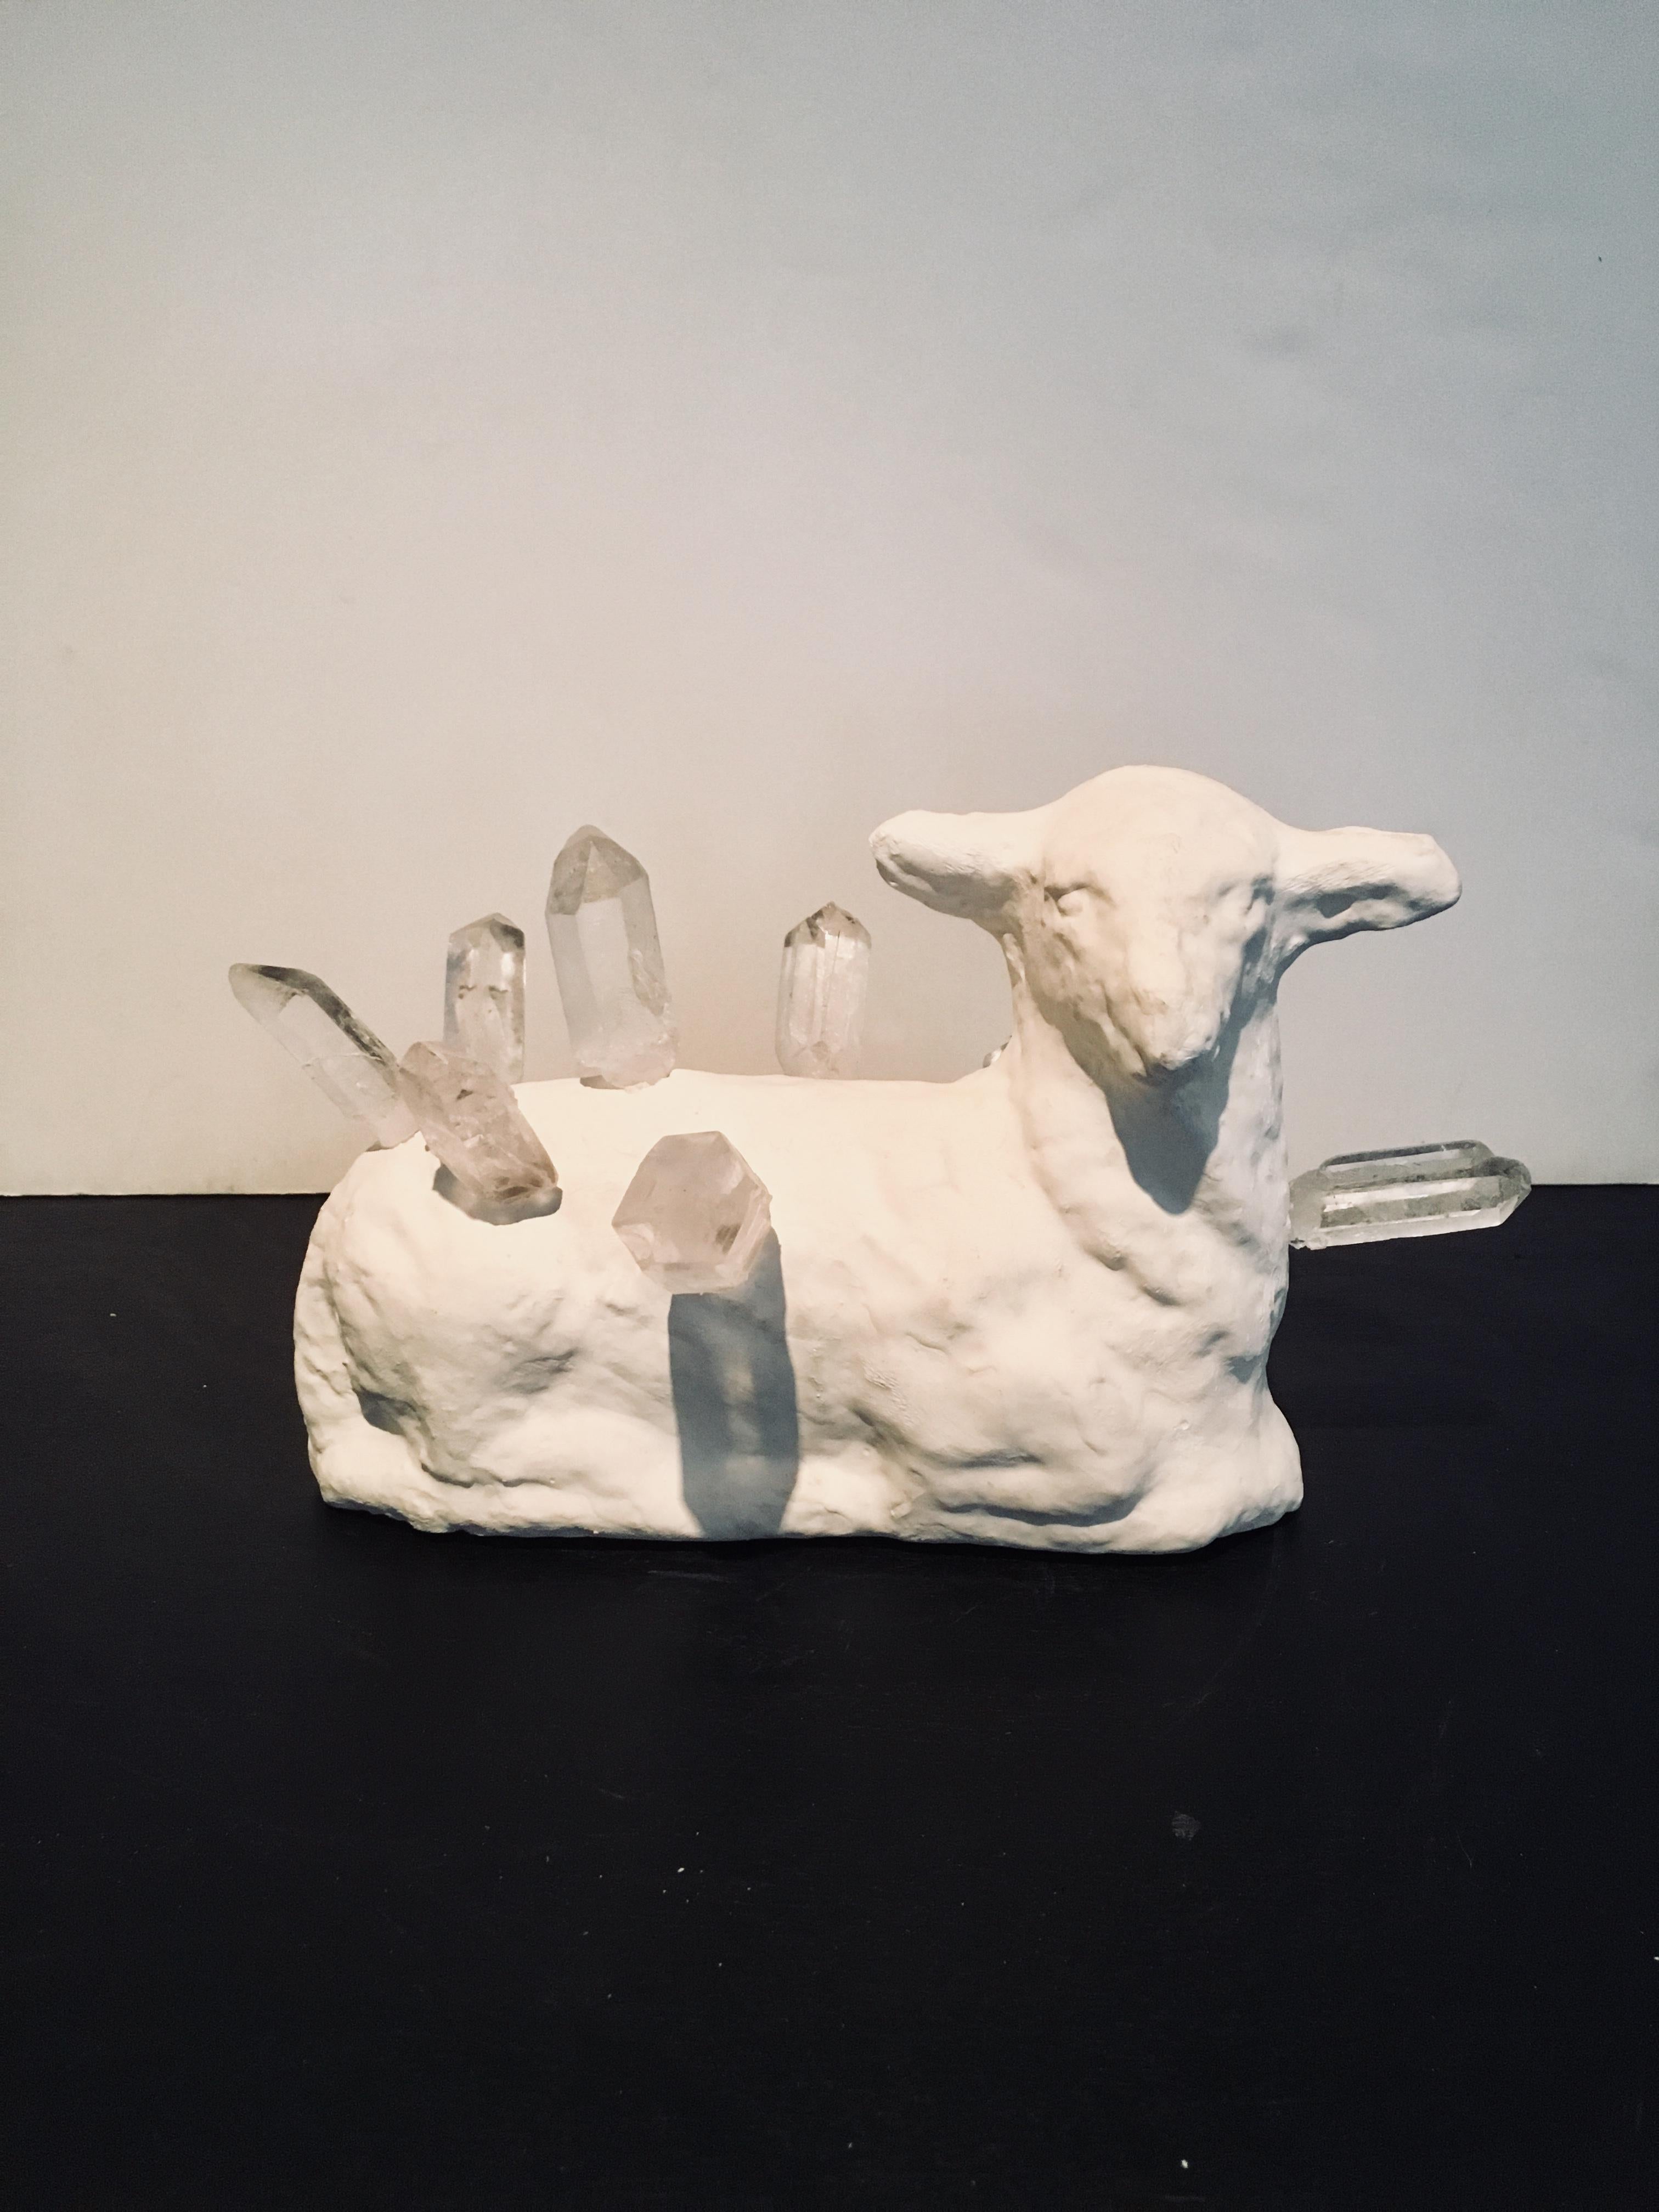 Abstract Lamb & Crystal Sculpture: 'Lamb Crystal'